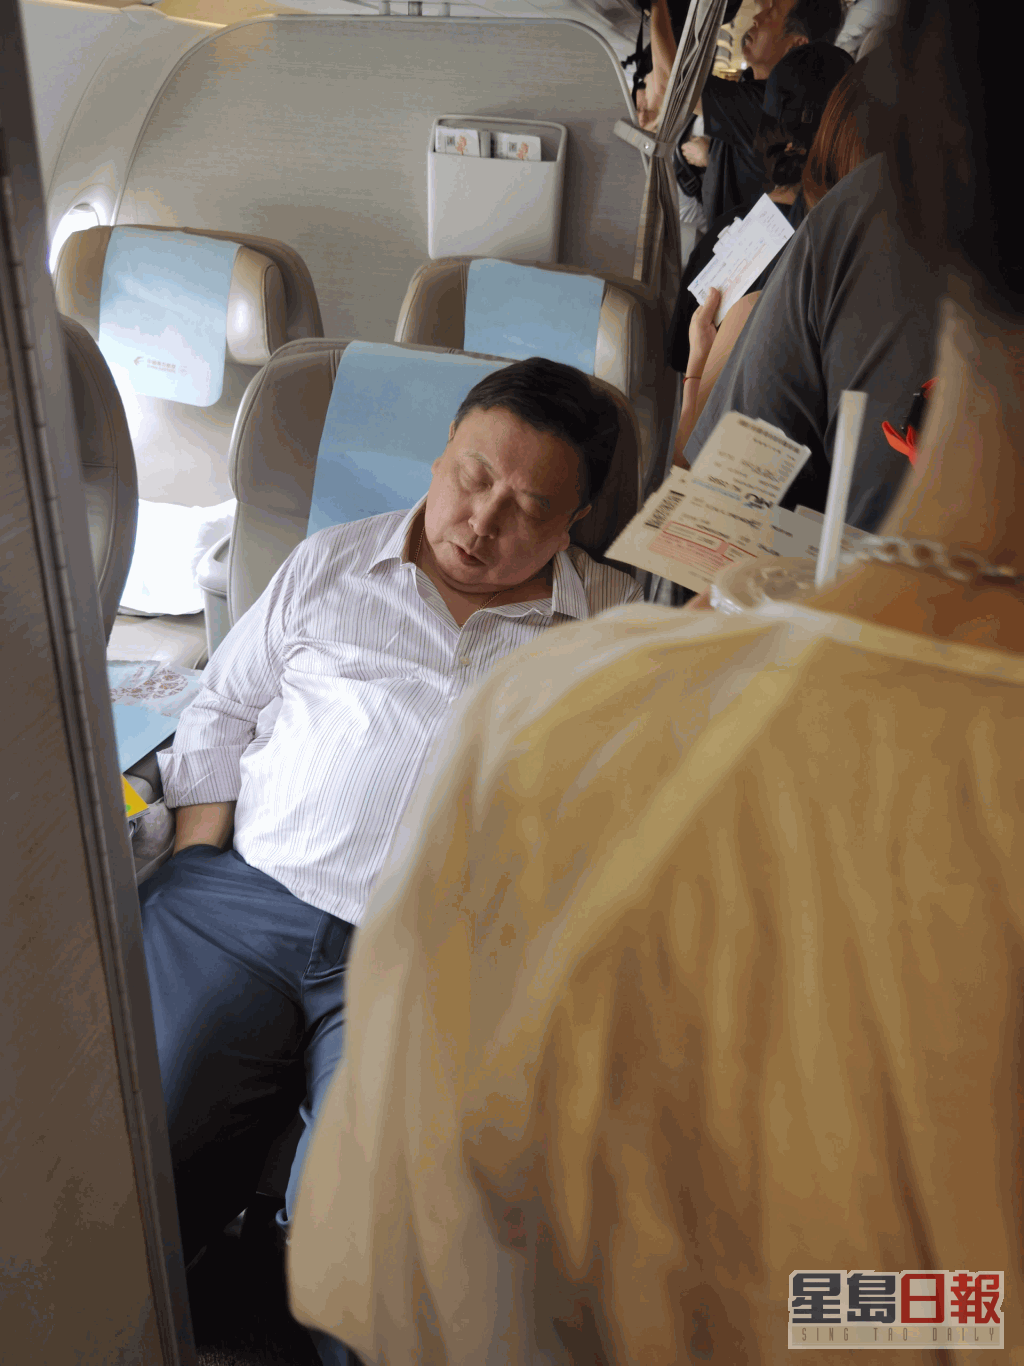 行程忙碌的王晶被网民拍到在登机期间竟然可以安然入睡。